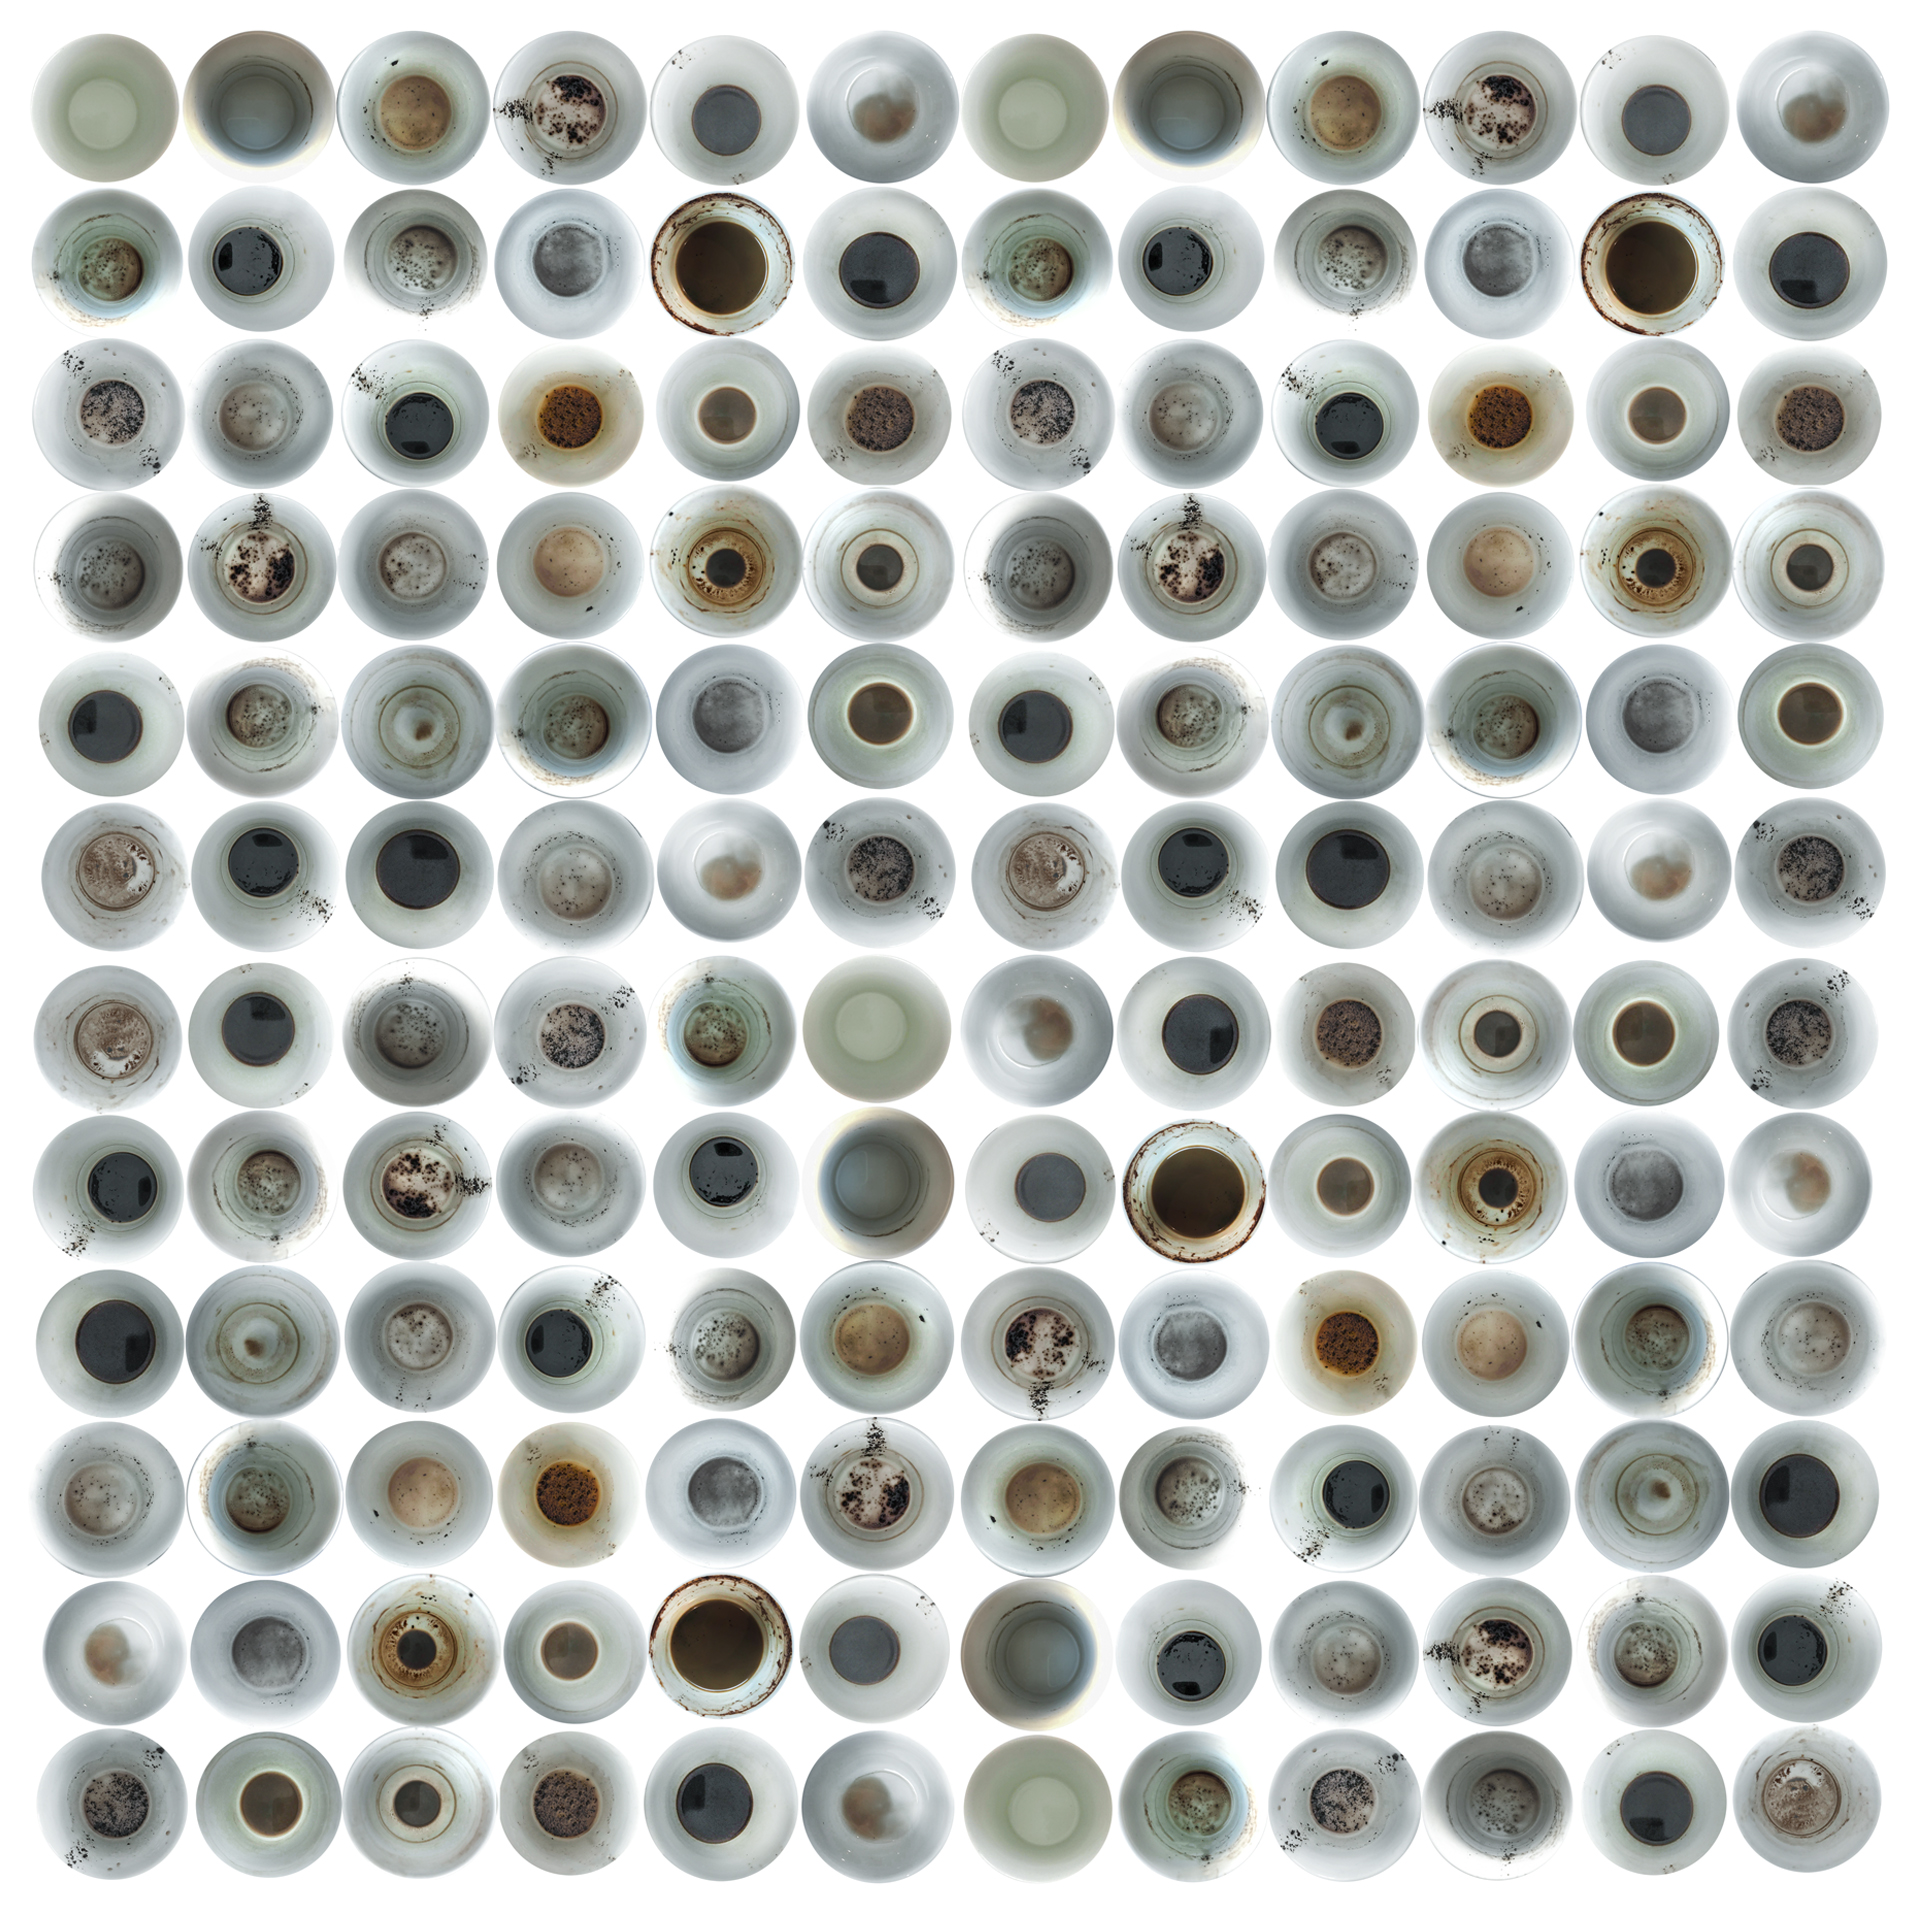 Kolorowa grafika na białym tle wypełniona w regularnych rzędach i 	kolumnach 144 okrągłymi zdjęciami okrągłych elementów widzianych od góry, np. odcisk po kubku, filiżanka z kawą, tęczówka oka.